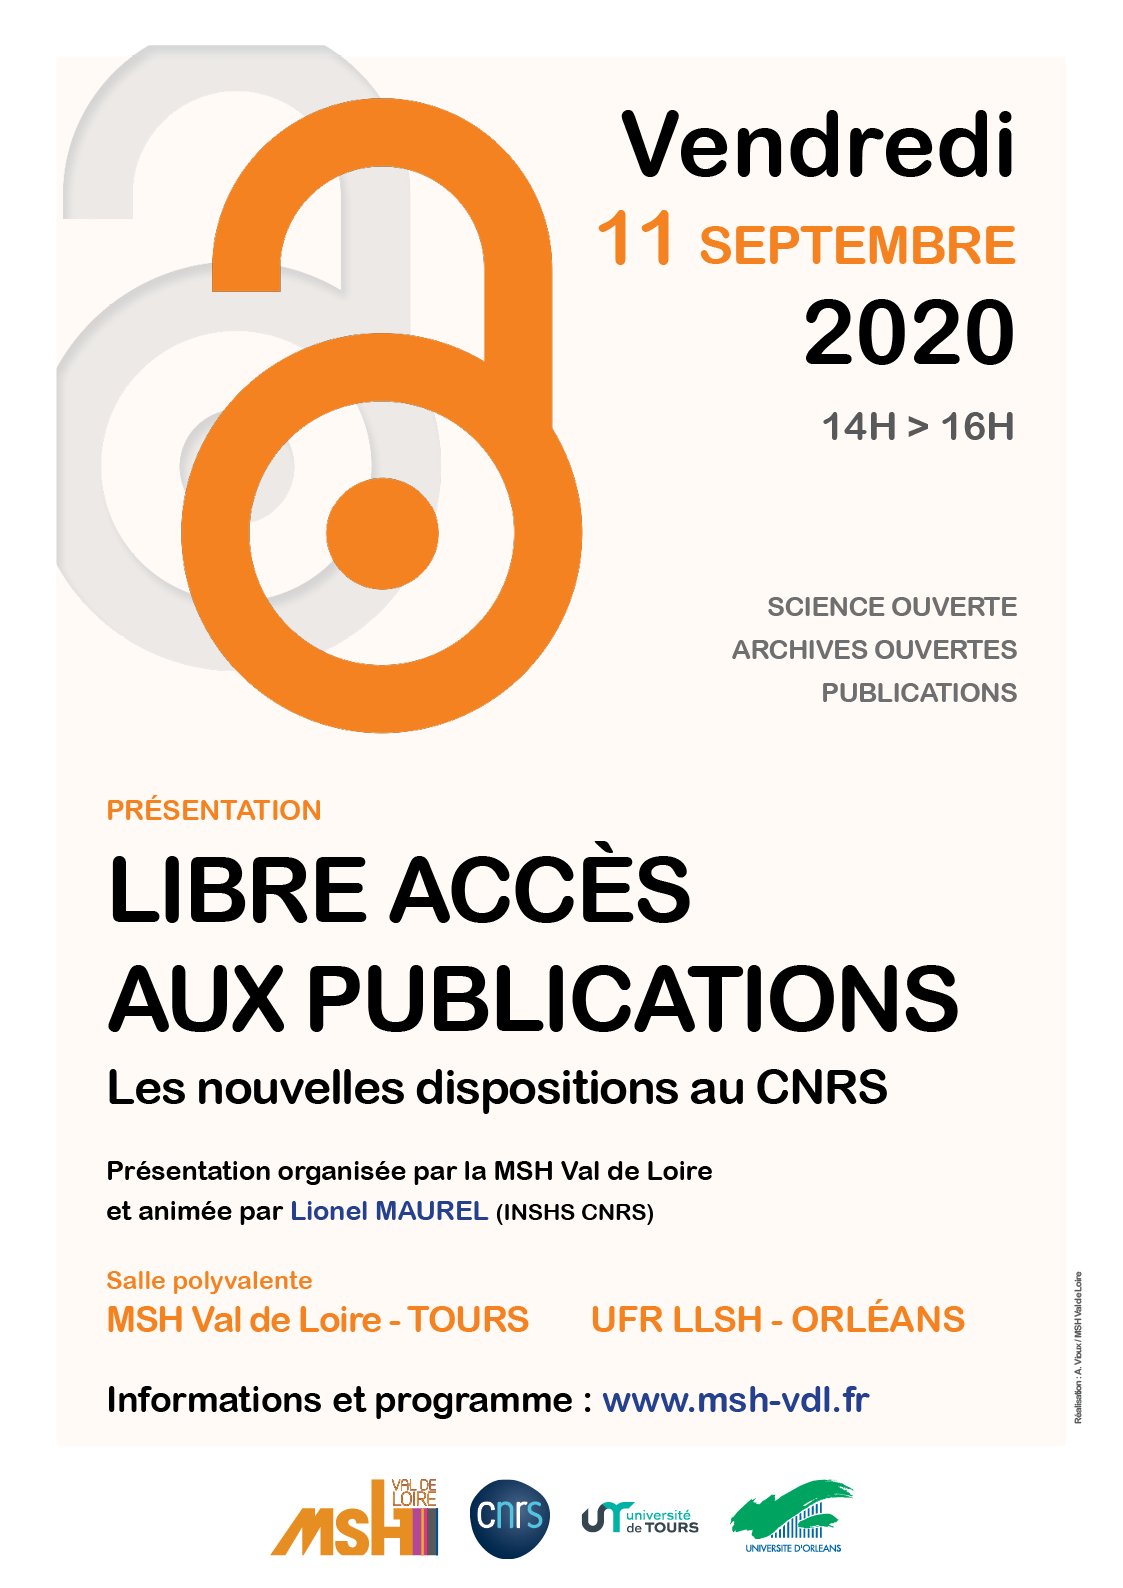 libre accès aux publications.
Les nouvelles dispositions au CNRS